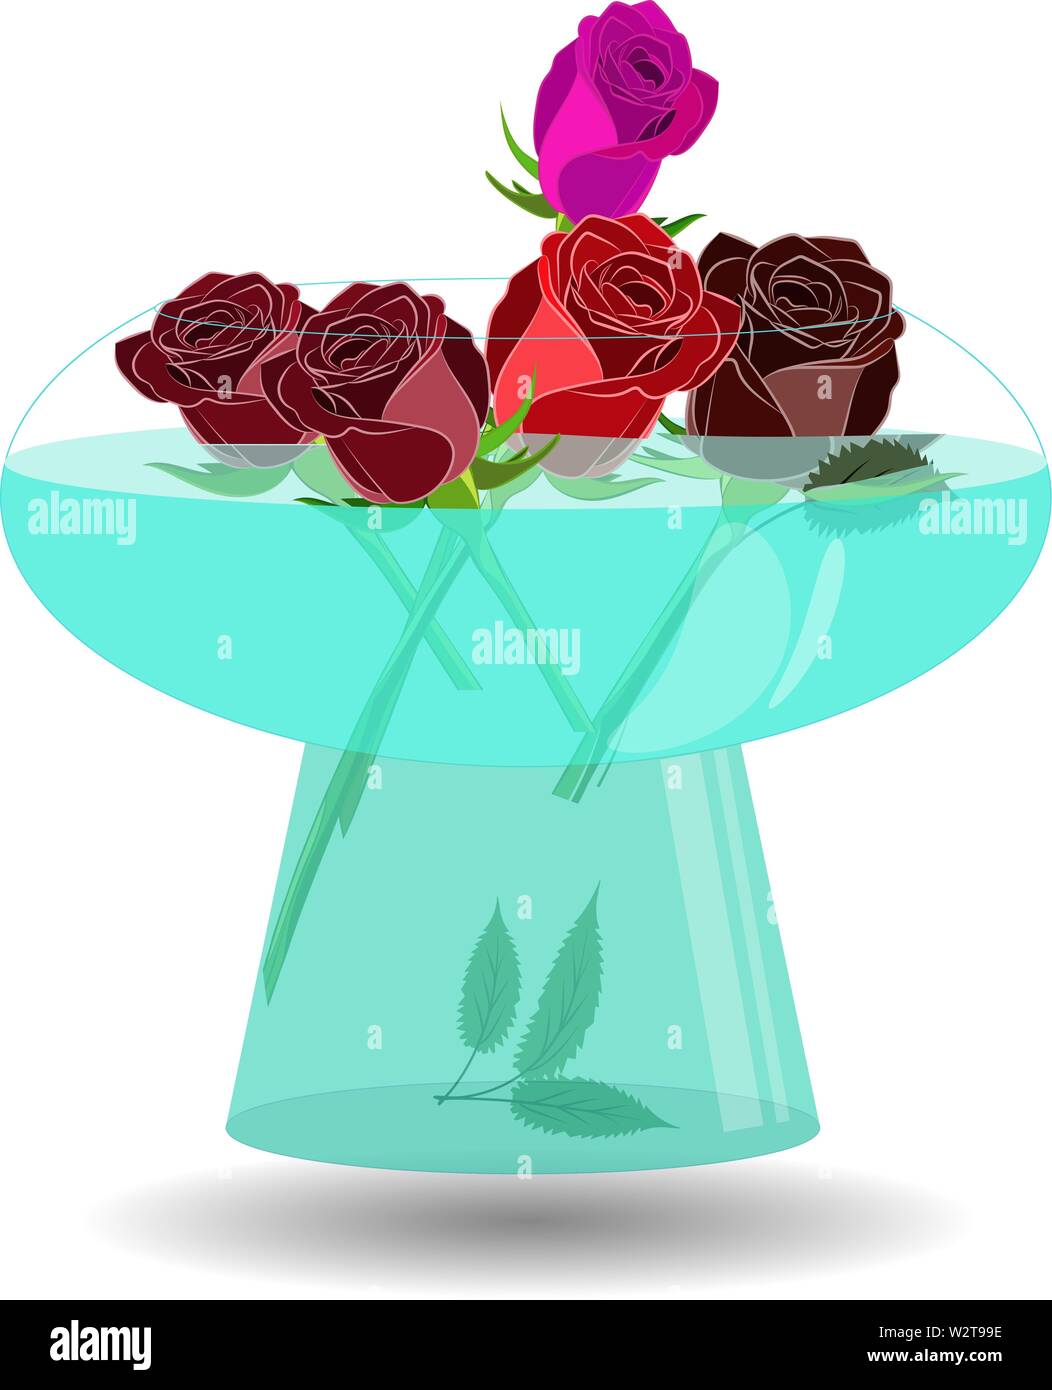 Bouquet de 5 roses dans un vase d'eau. Belle illustration vectorielle, Scarlet, violet et rouge roses dans un bol transparent avec de l'eau Illustration de Vecteur